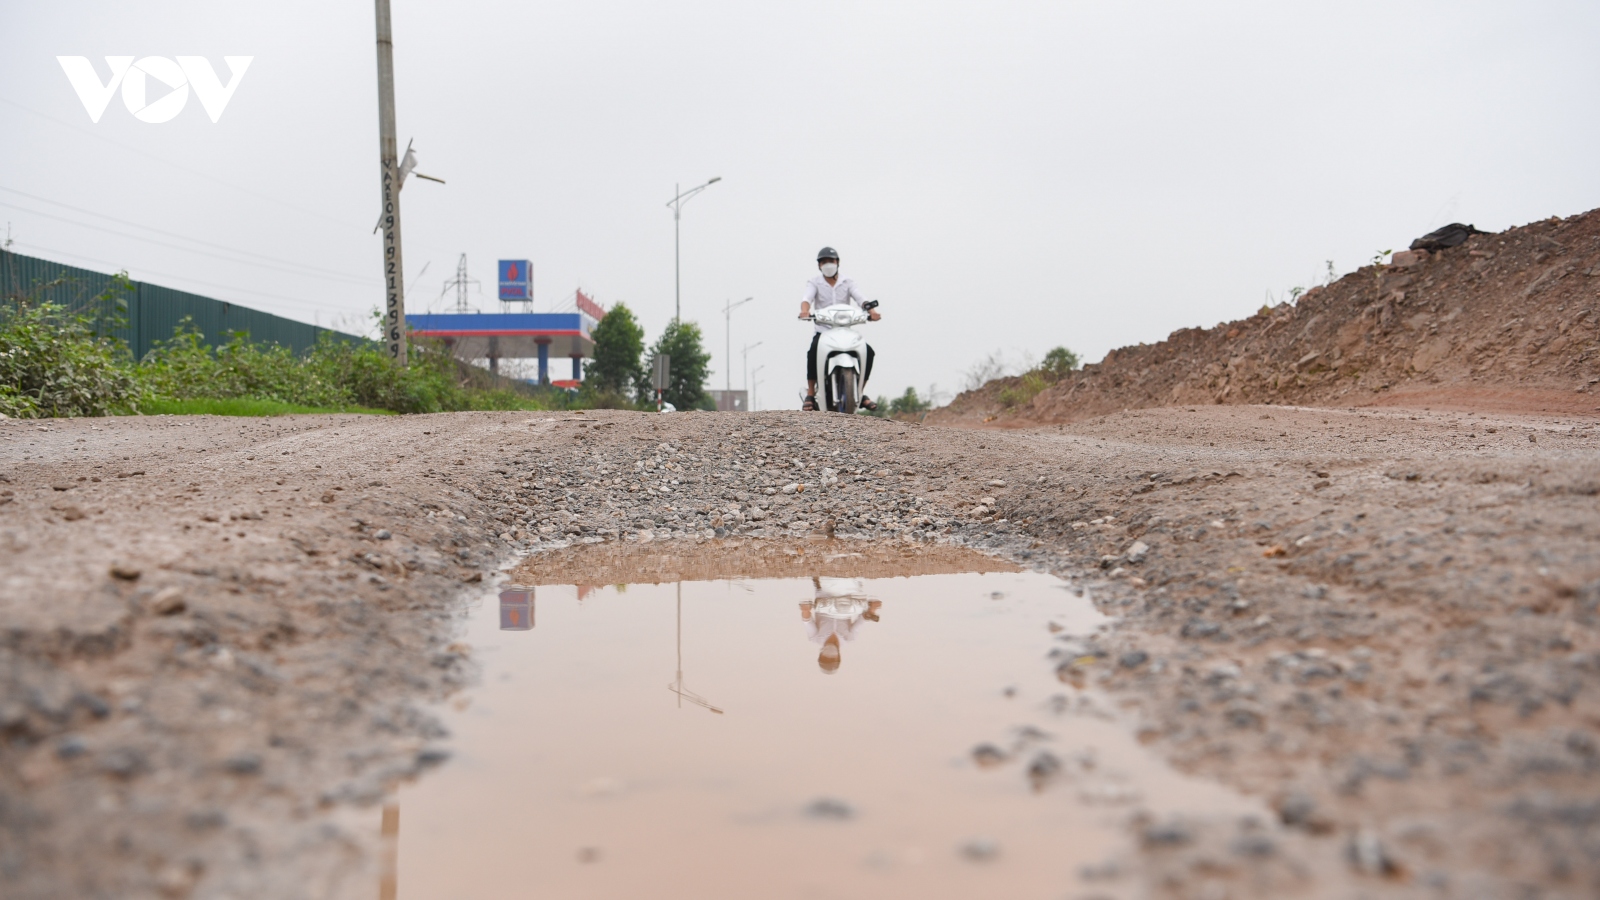 Đường gom cao tốc Hà Nội - Bắc Giang xuống cấp trầm trọng, mất an toàn giao thông